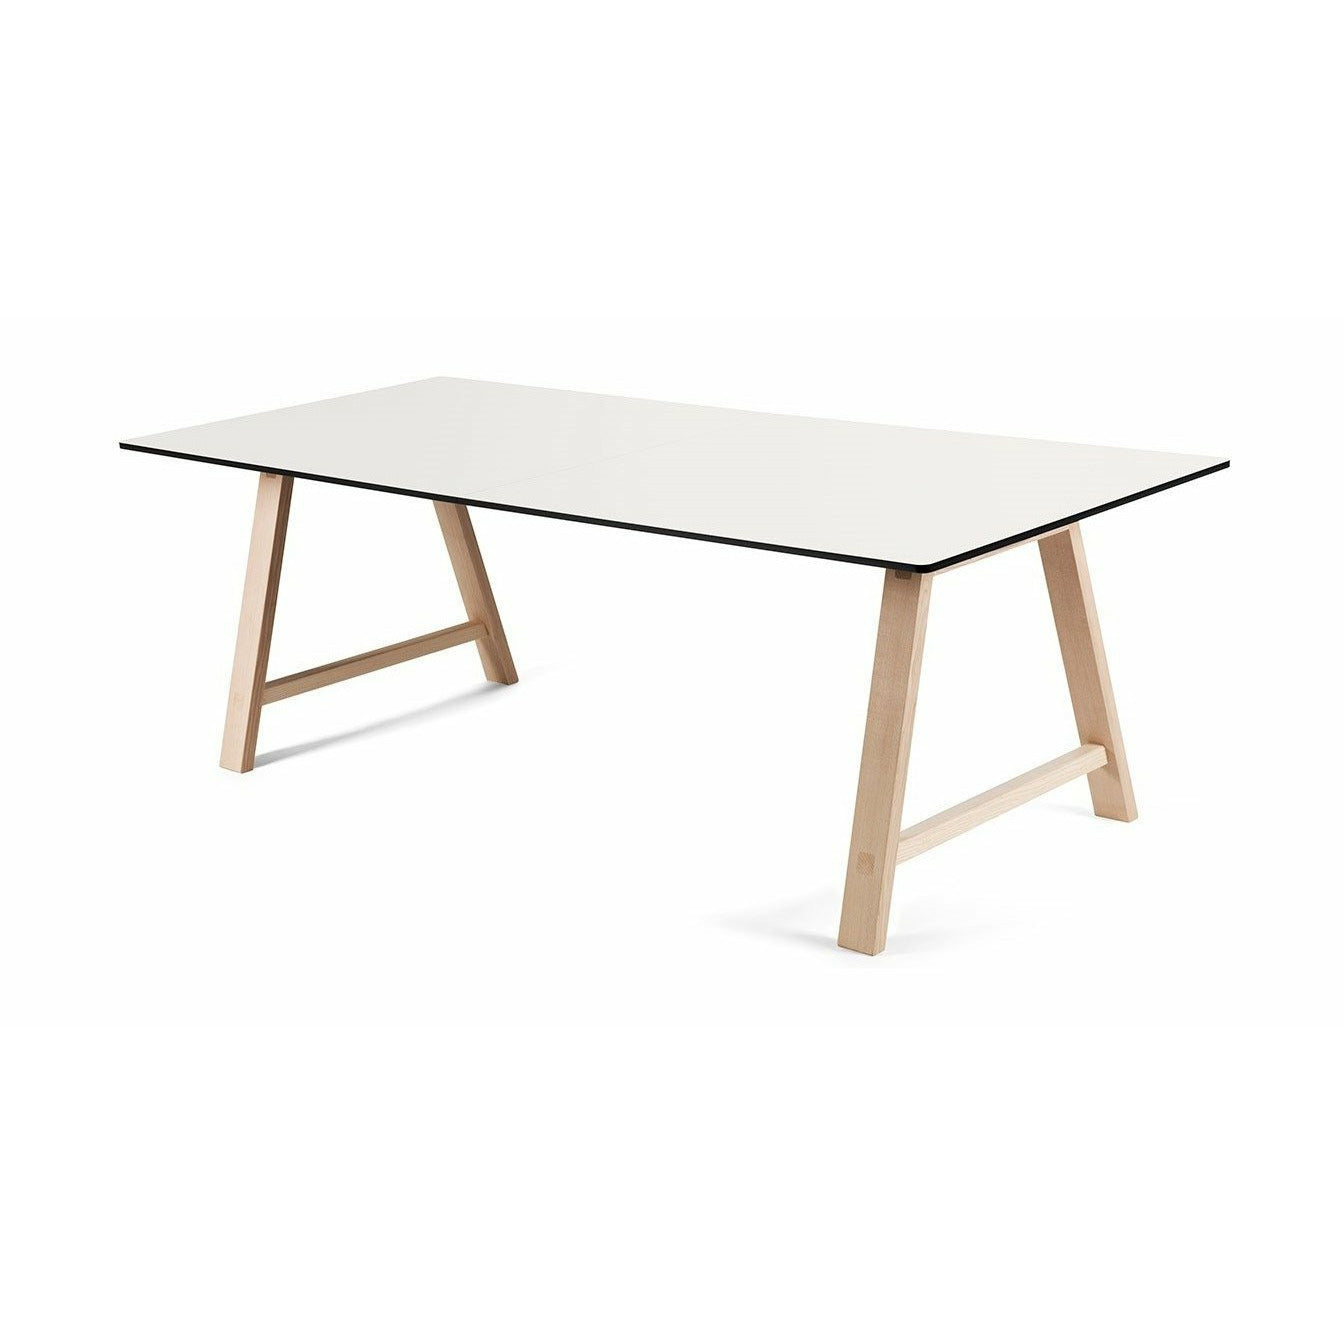 Andersen Furniture T1 udtræksbord, hvid laminat, sæbebehandlet eg, 180 cm